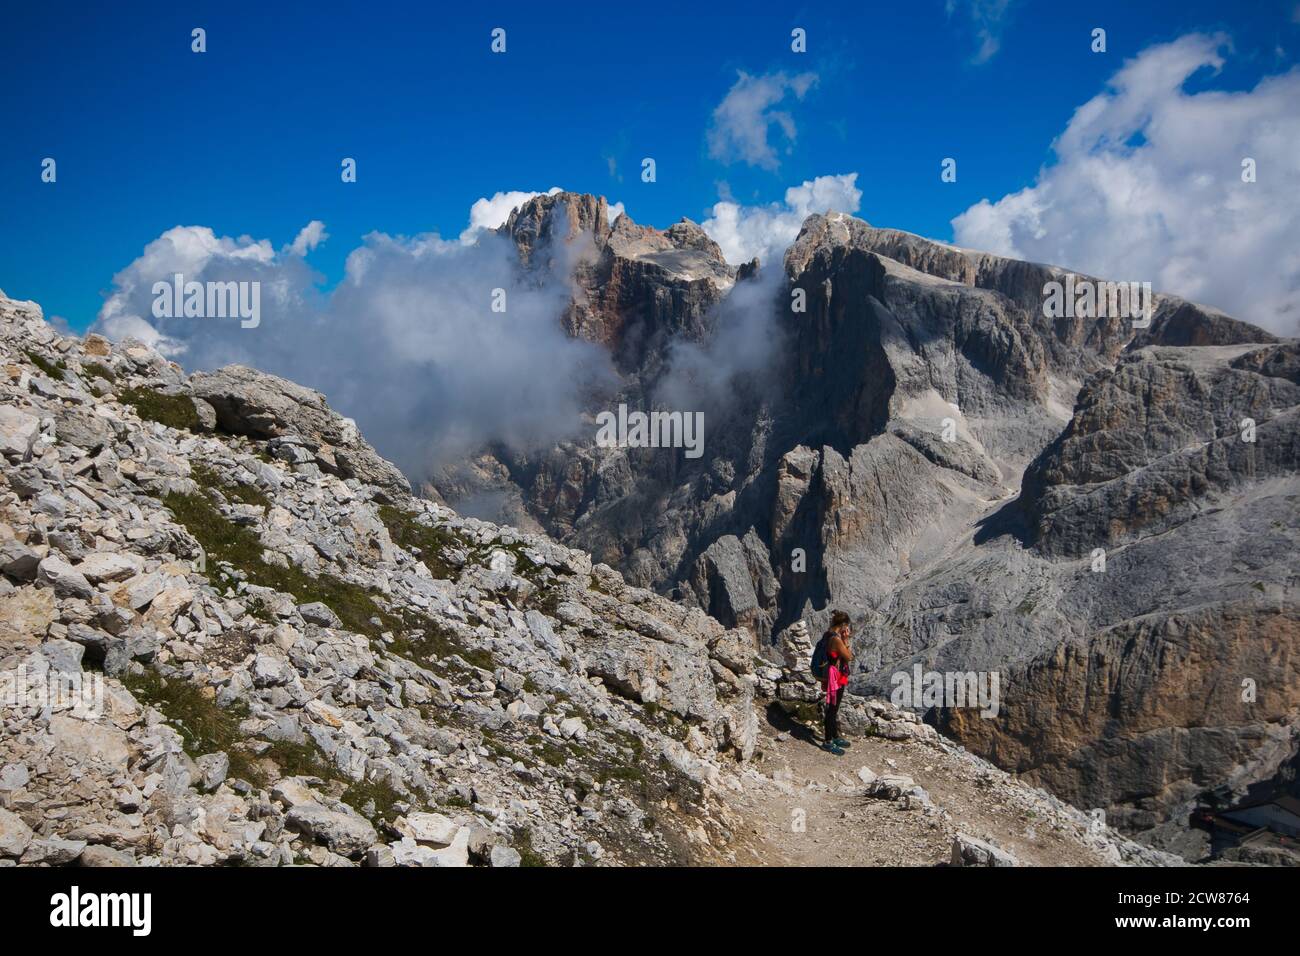 Vista panoramica sulle pale di San Martino, una catena montuosa delle Dolomiti nel Trentino orientale. Si tratta di un famoso trekking nelle alpi italiane Foto Stock